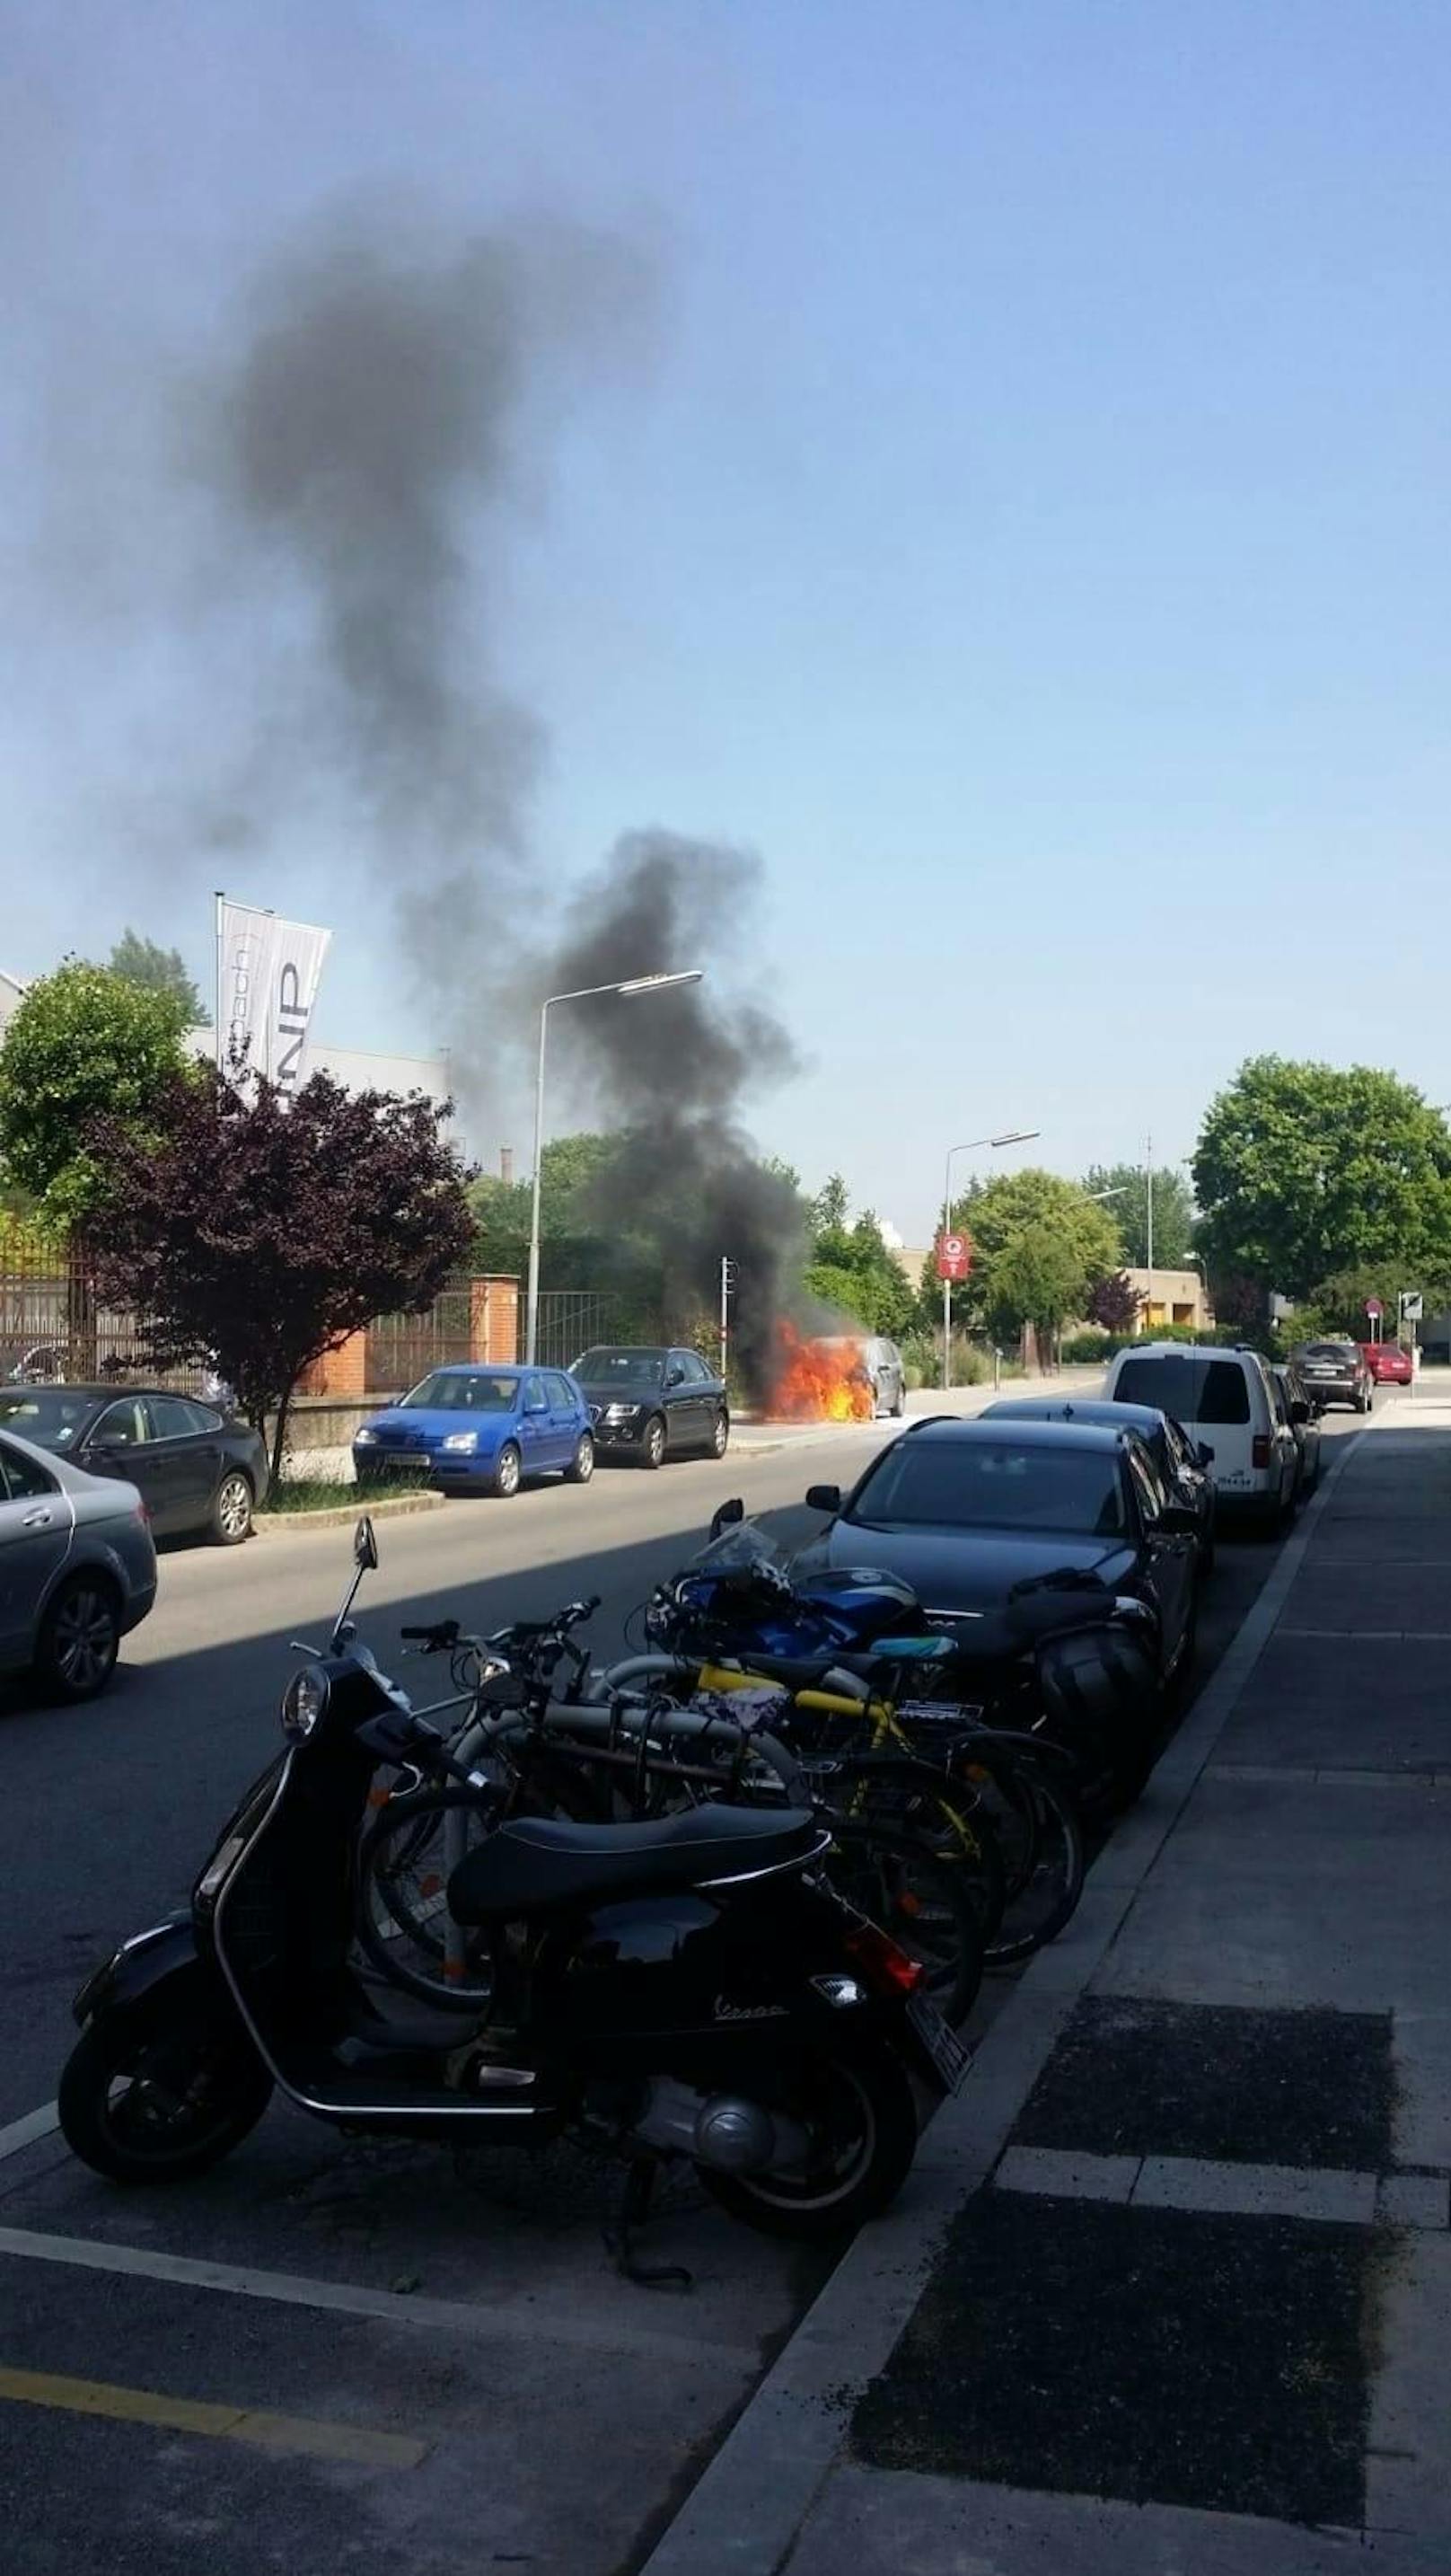 Bei der Muthgasse 105 in Wien-Döbling brannte am Dienstagvormittag plötzlich ein Auto. Die Feuerwehr musste ausrücken.